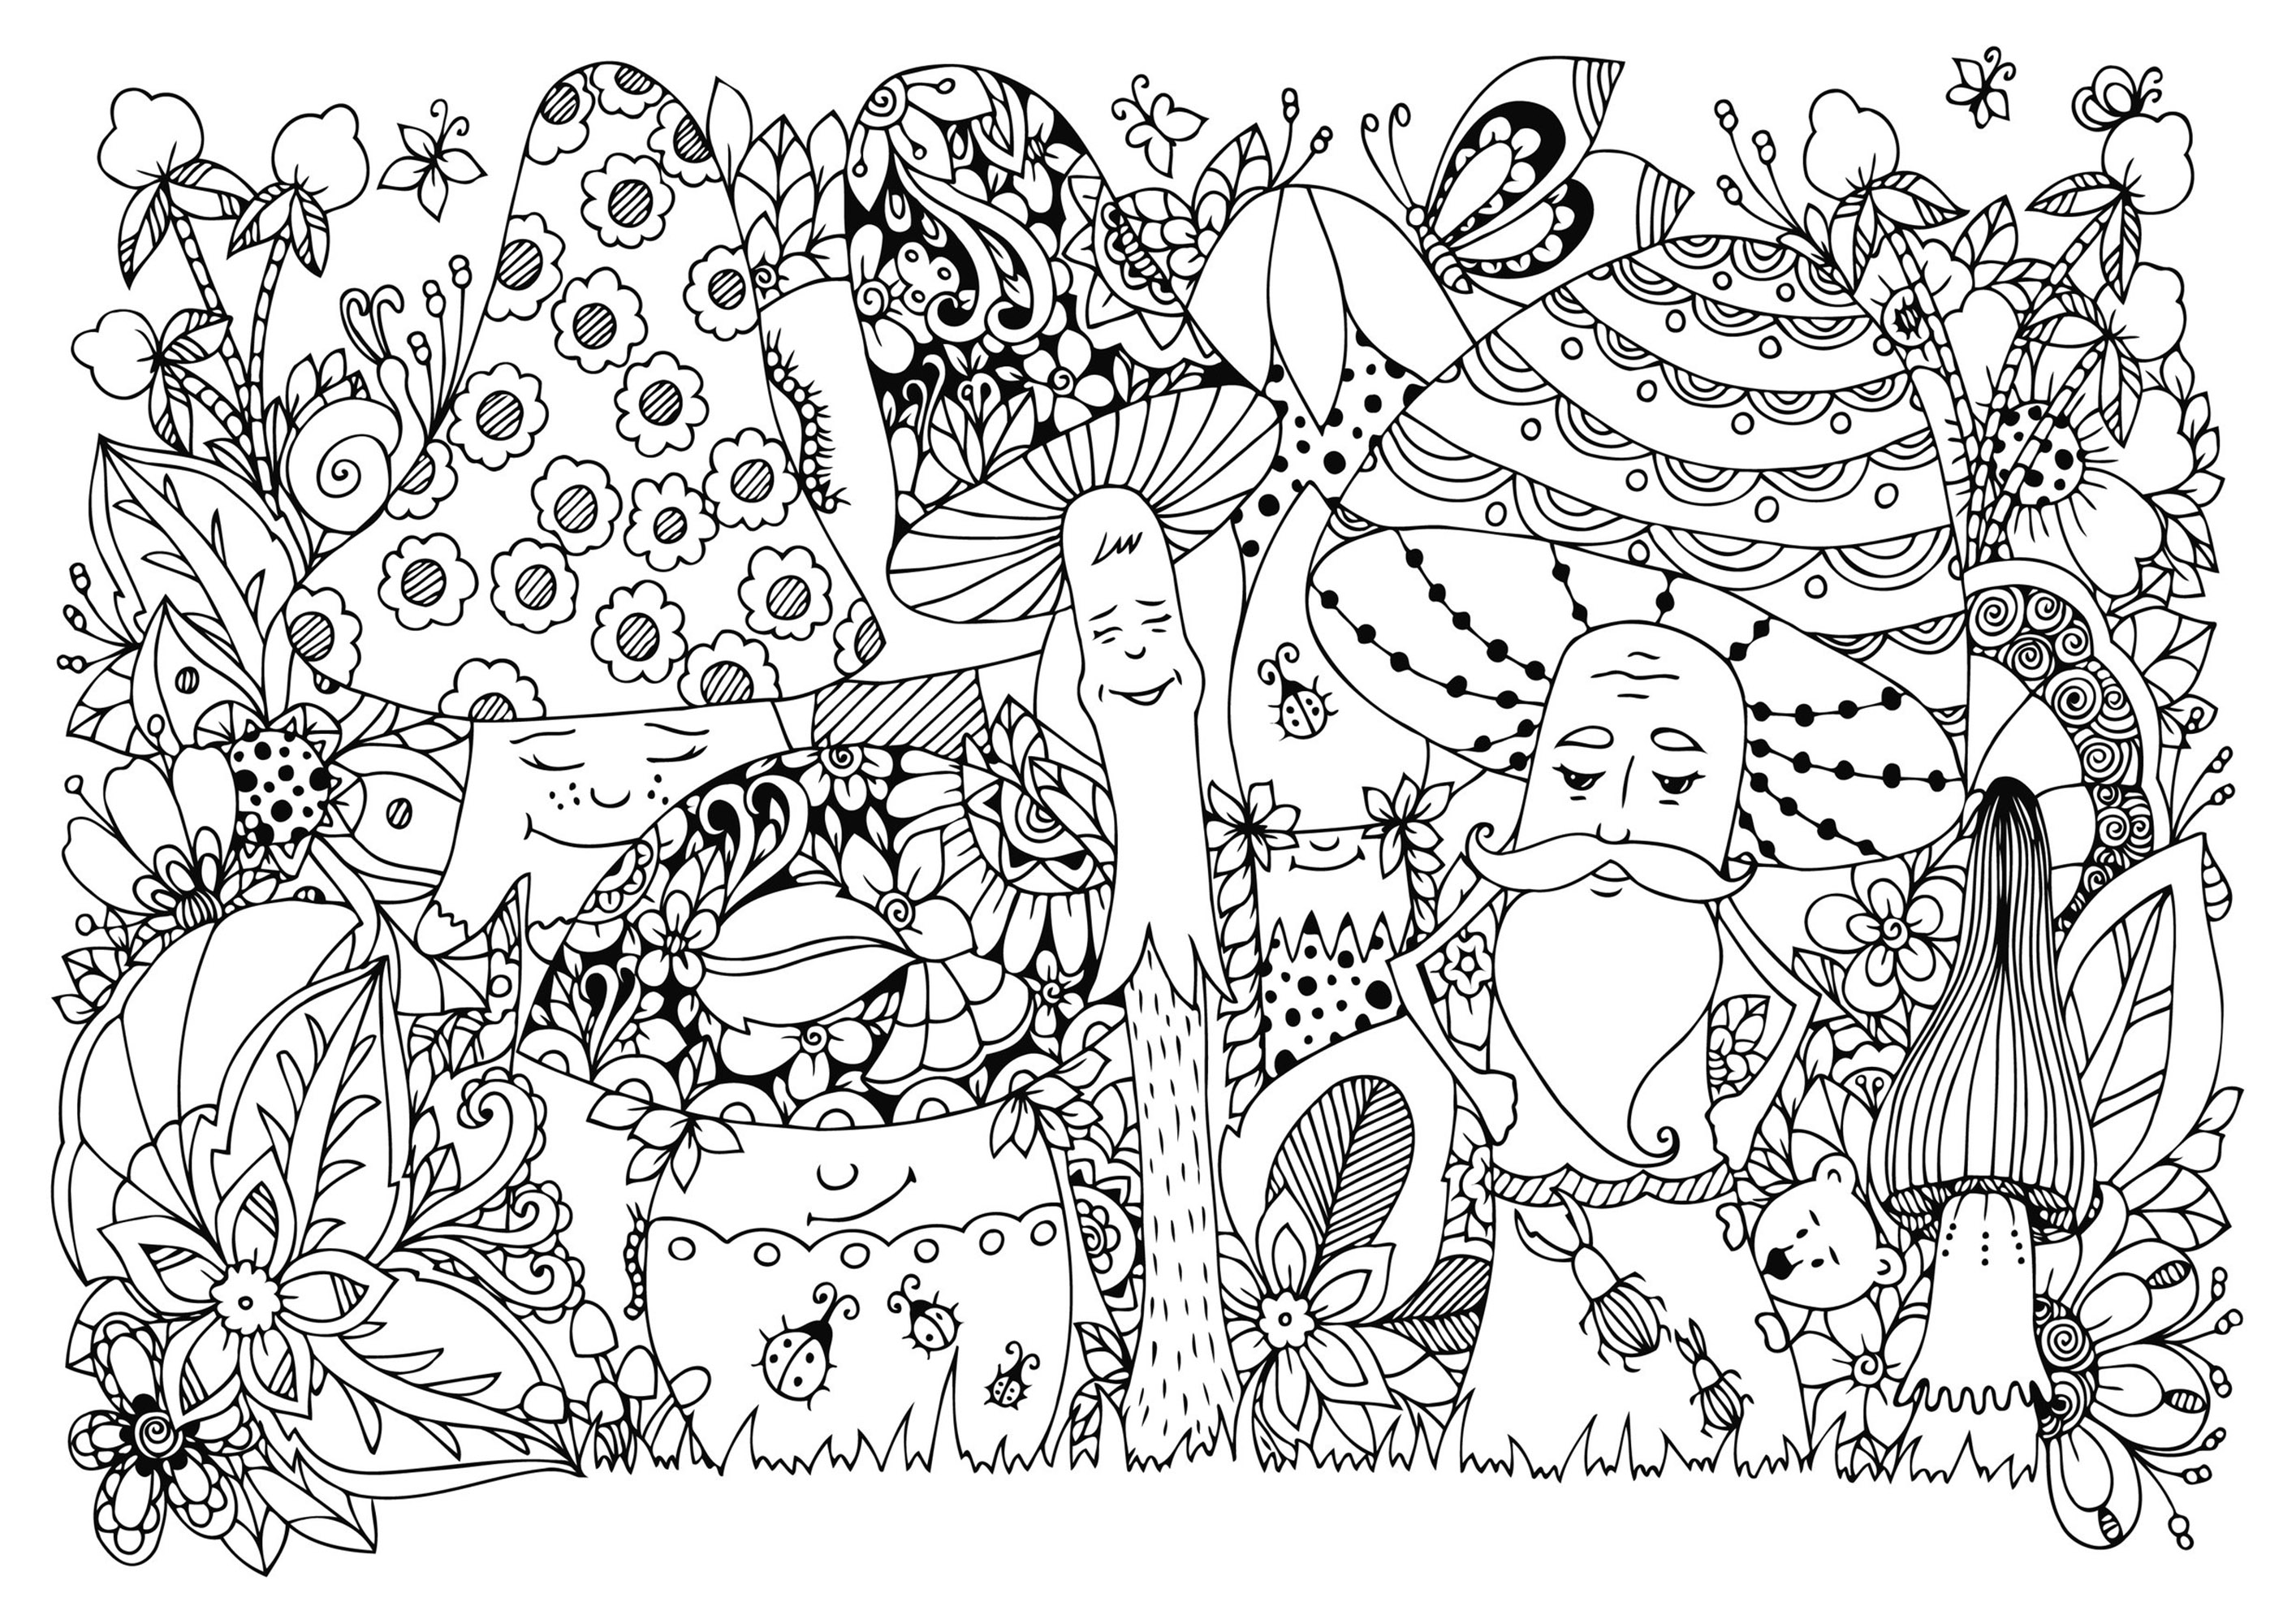 Cogumelos felizes na floresta, com muitos insectos e flores. Muitos pormenores escondidos para descobrir e colorir, Fonte : 123rf   Artista : Tanvetka